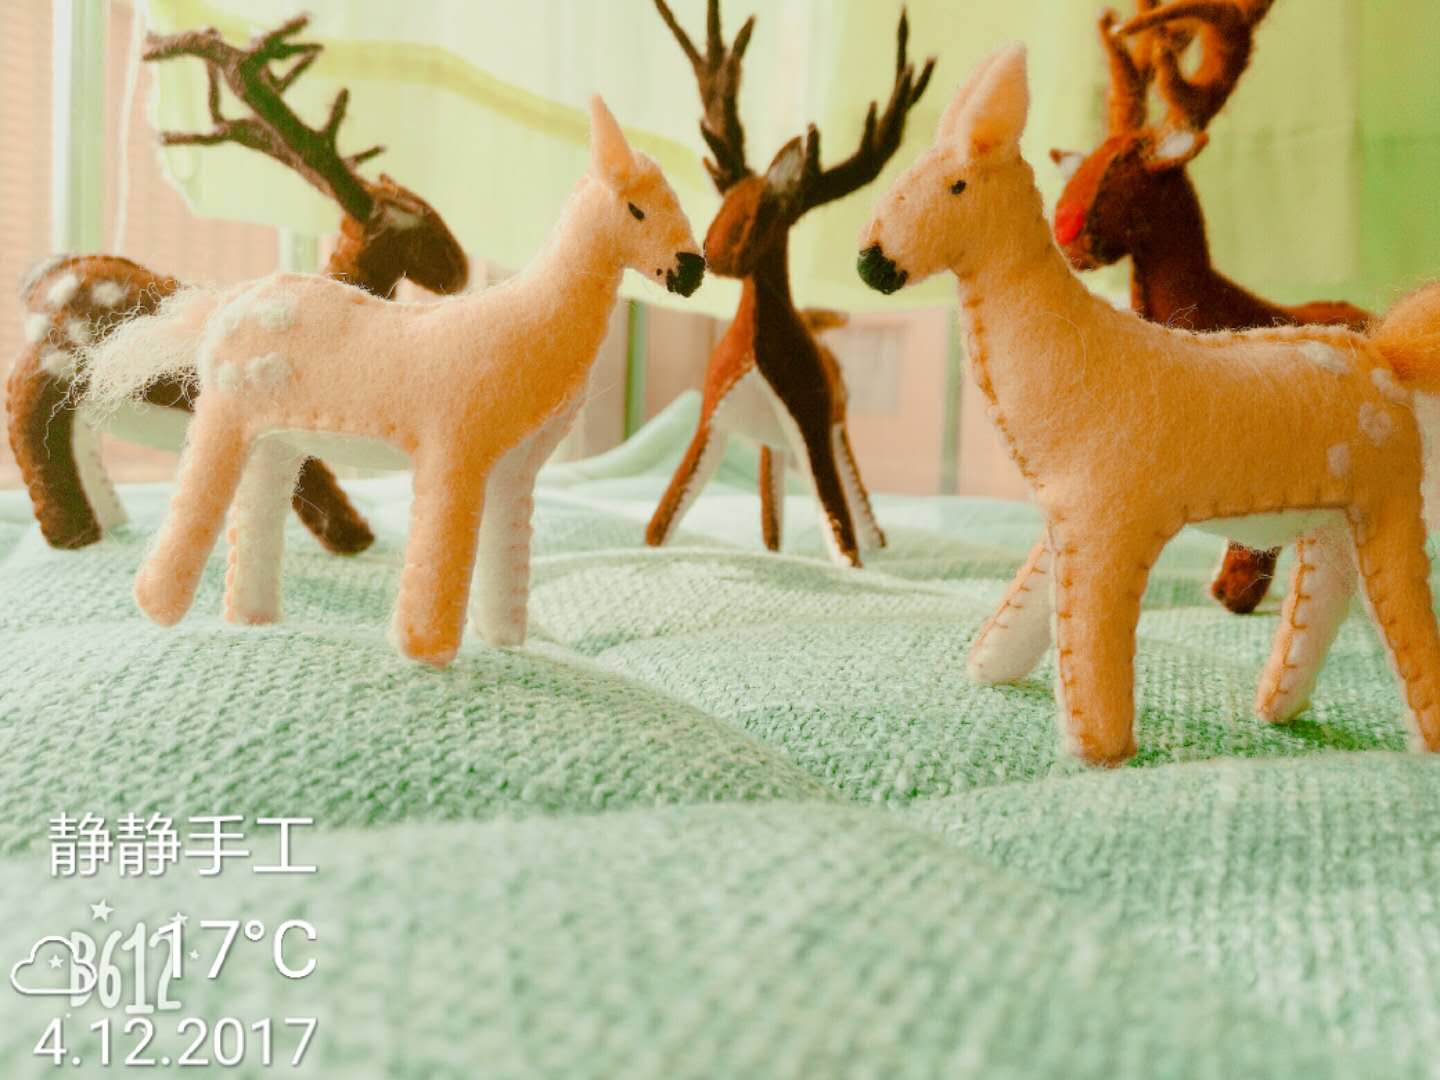 羊毛毡系列2：梅花鹿、小老鼠、猫和花仙子 | 瑞静老师玩转手工视频系列